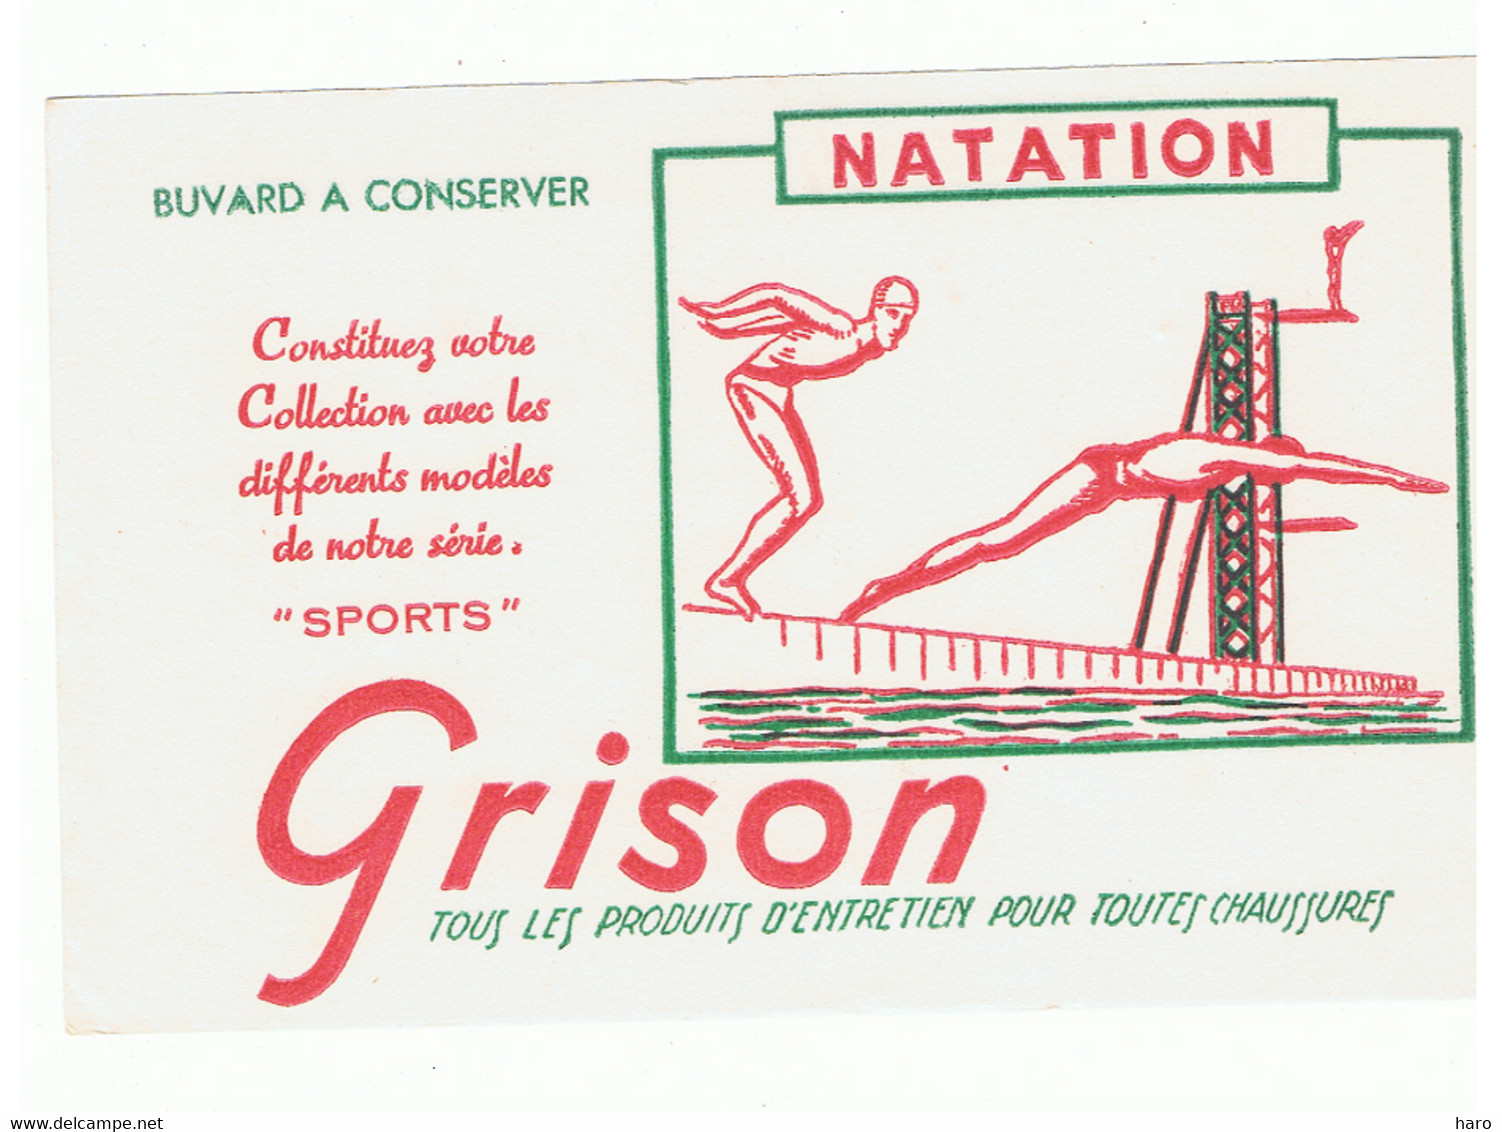 Buvard - NATATION - Sport - Publicité GRISON - Produits Entretien Chaussures (FR102) - Automobil